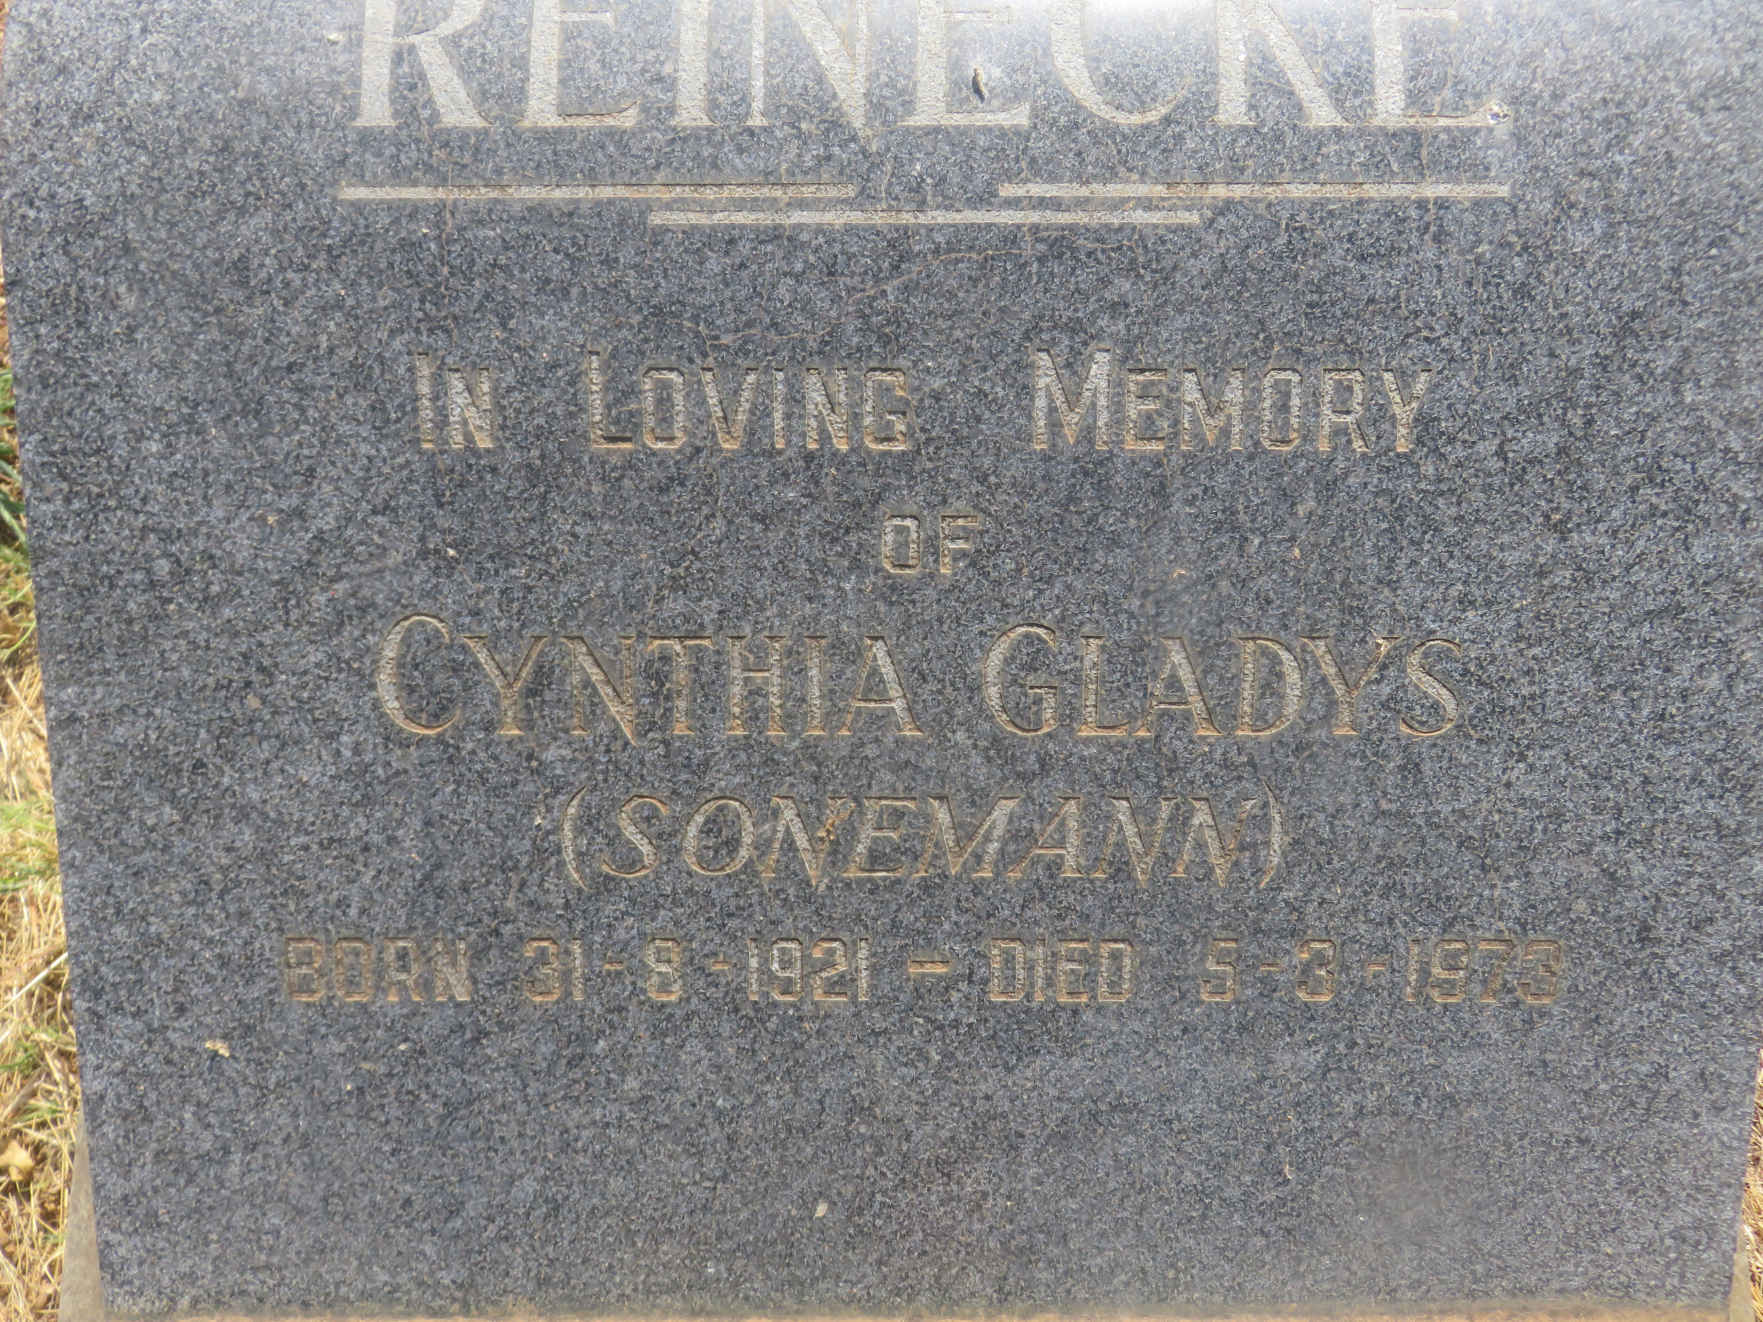 REINECKE Cynthia Gladys nee SONEMANN 1921-1973